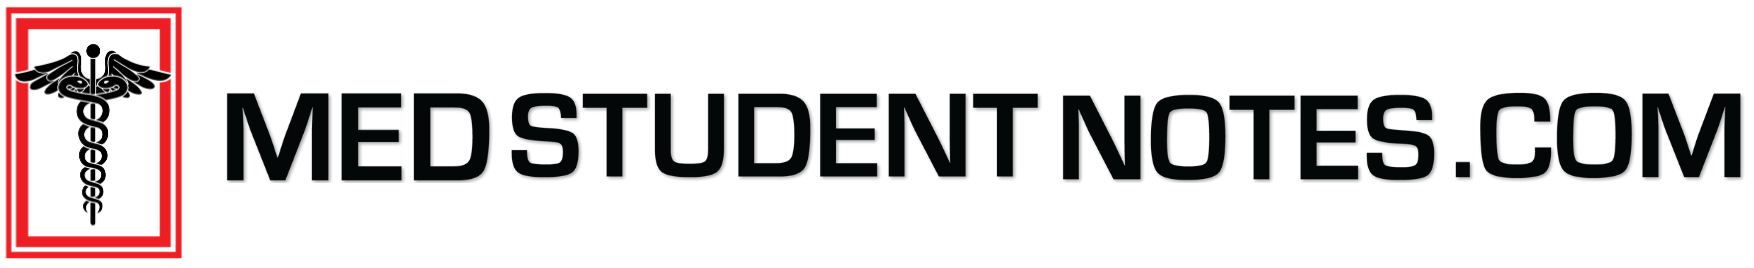 MedStudentNotes.com Logo